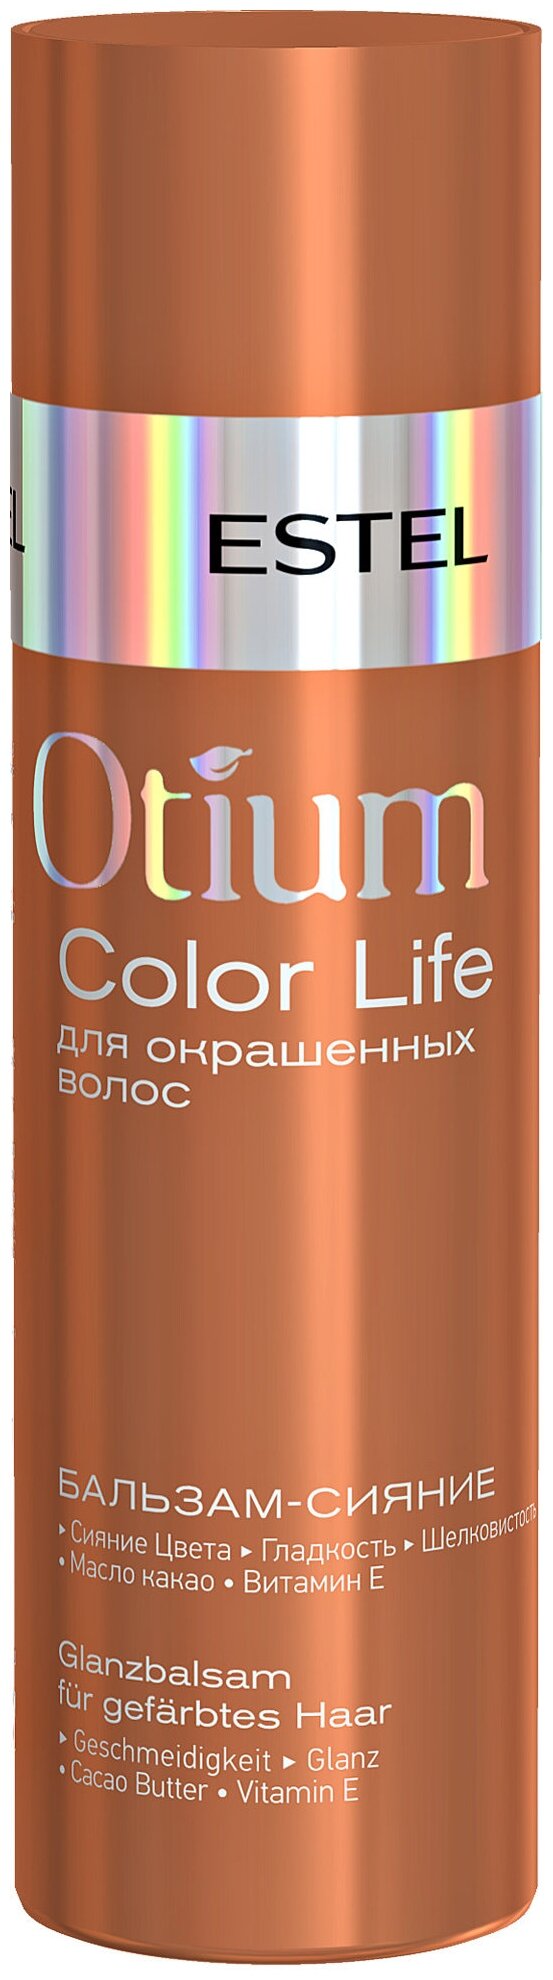 Бальзам-сияние ESTEL для окрашенных волос Otium Color life 200 мл